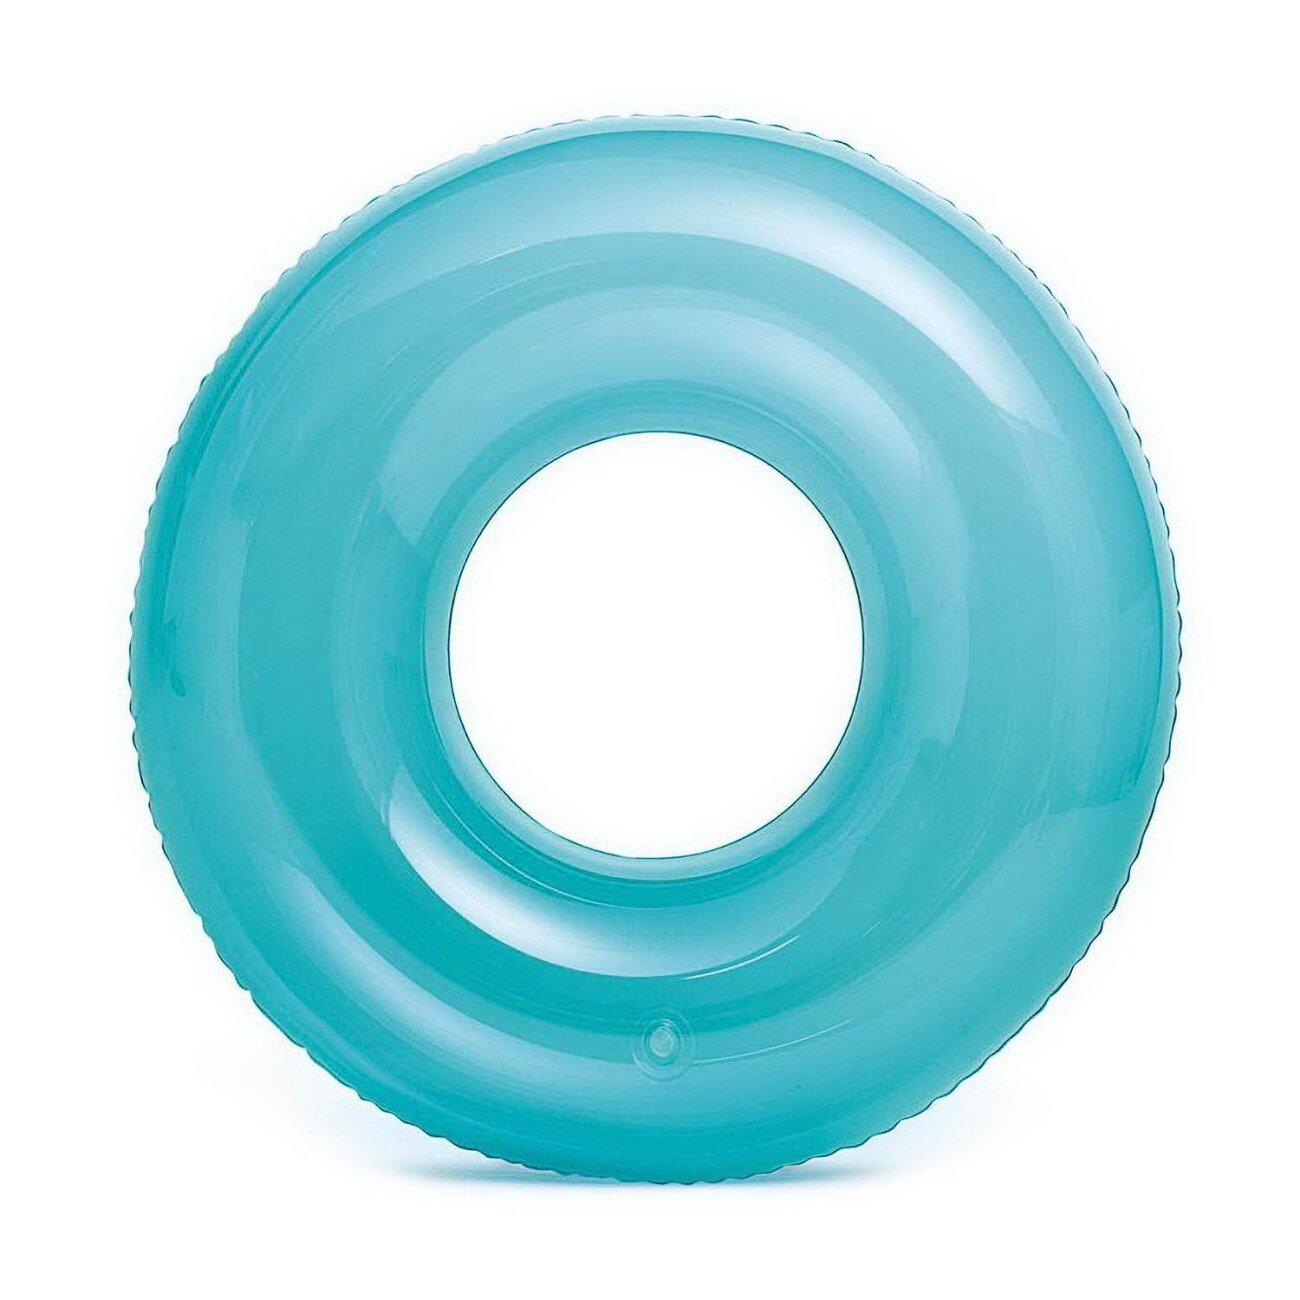 Круг надувной INTEX Transparent Tubes Прозрачный голубой от 8 лет 76 см int59260NP/голубой